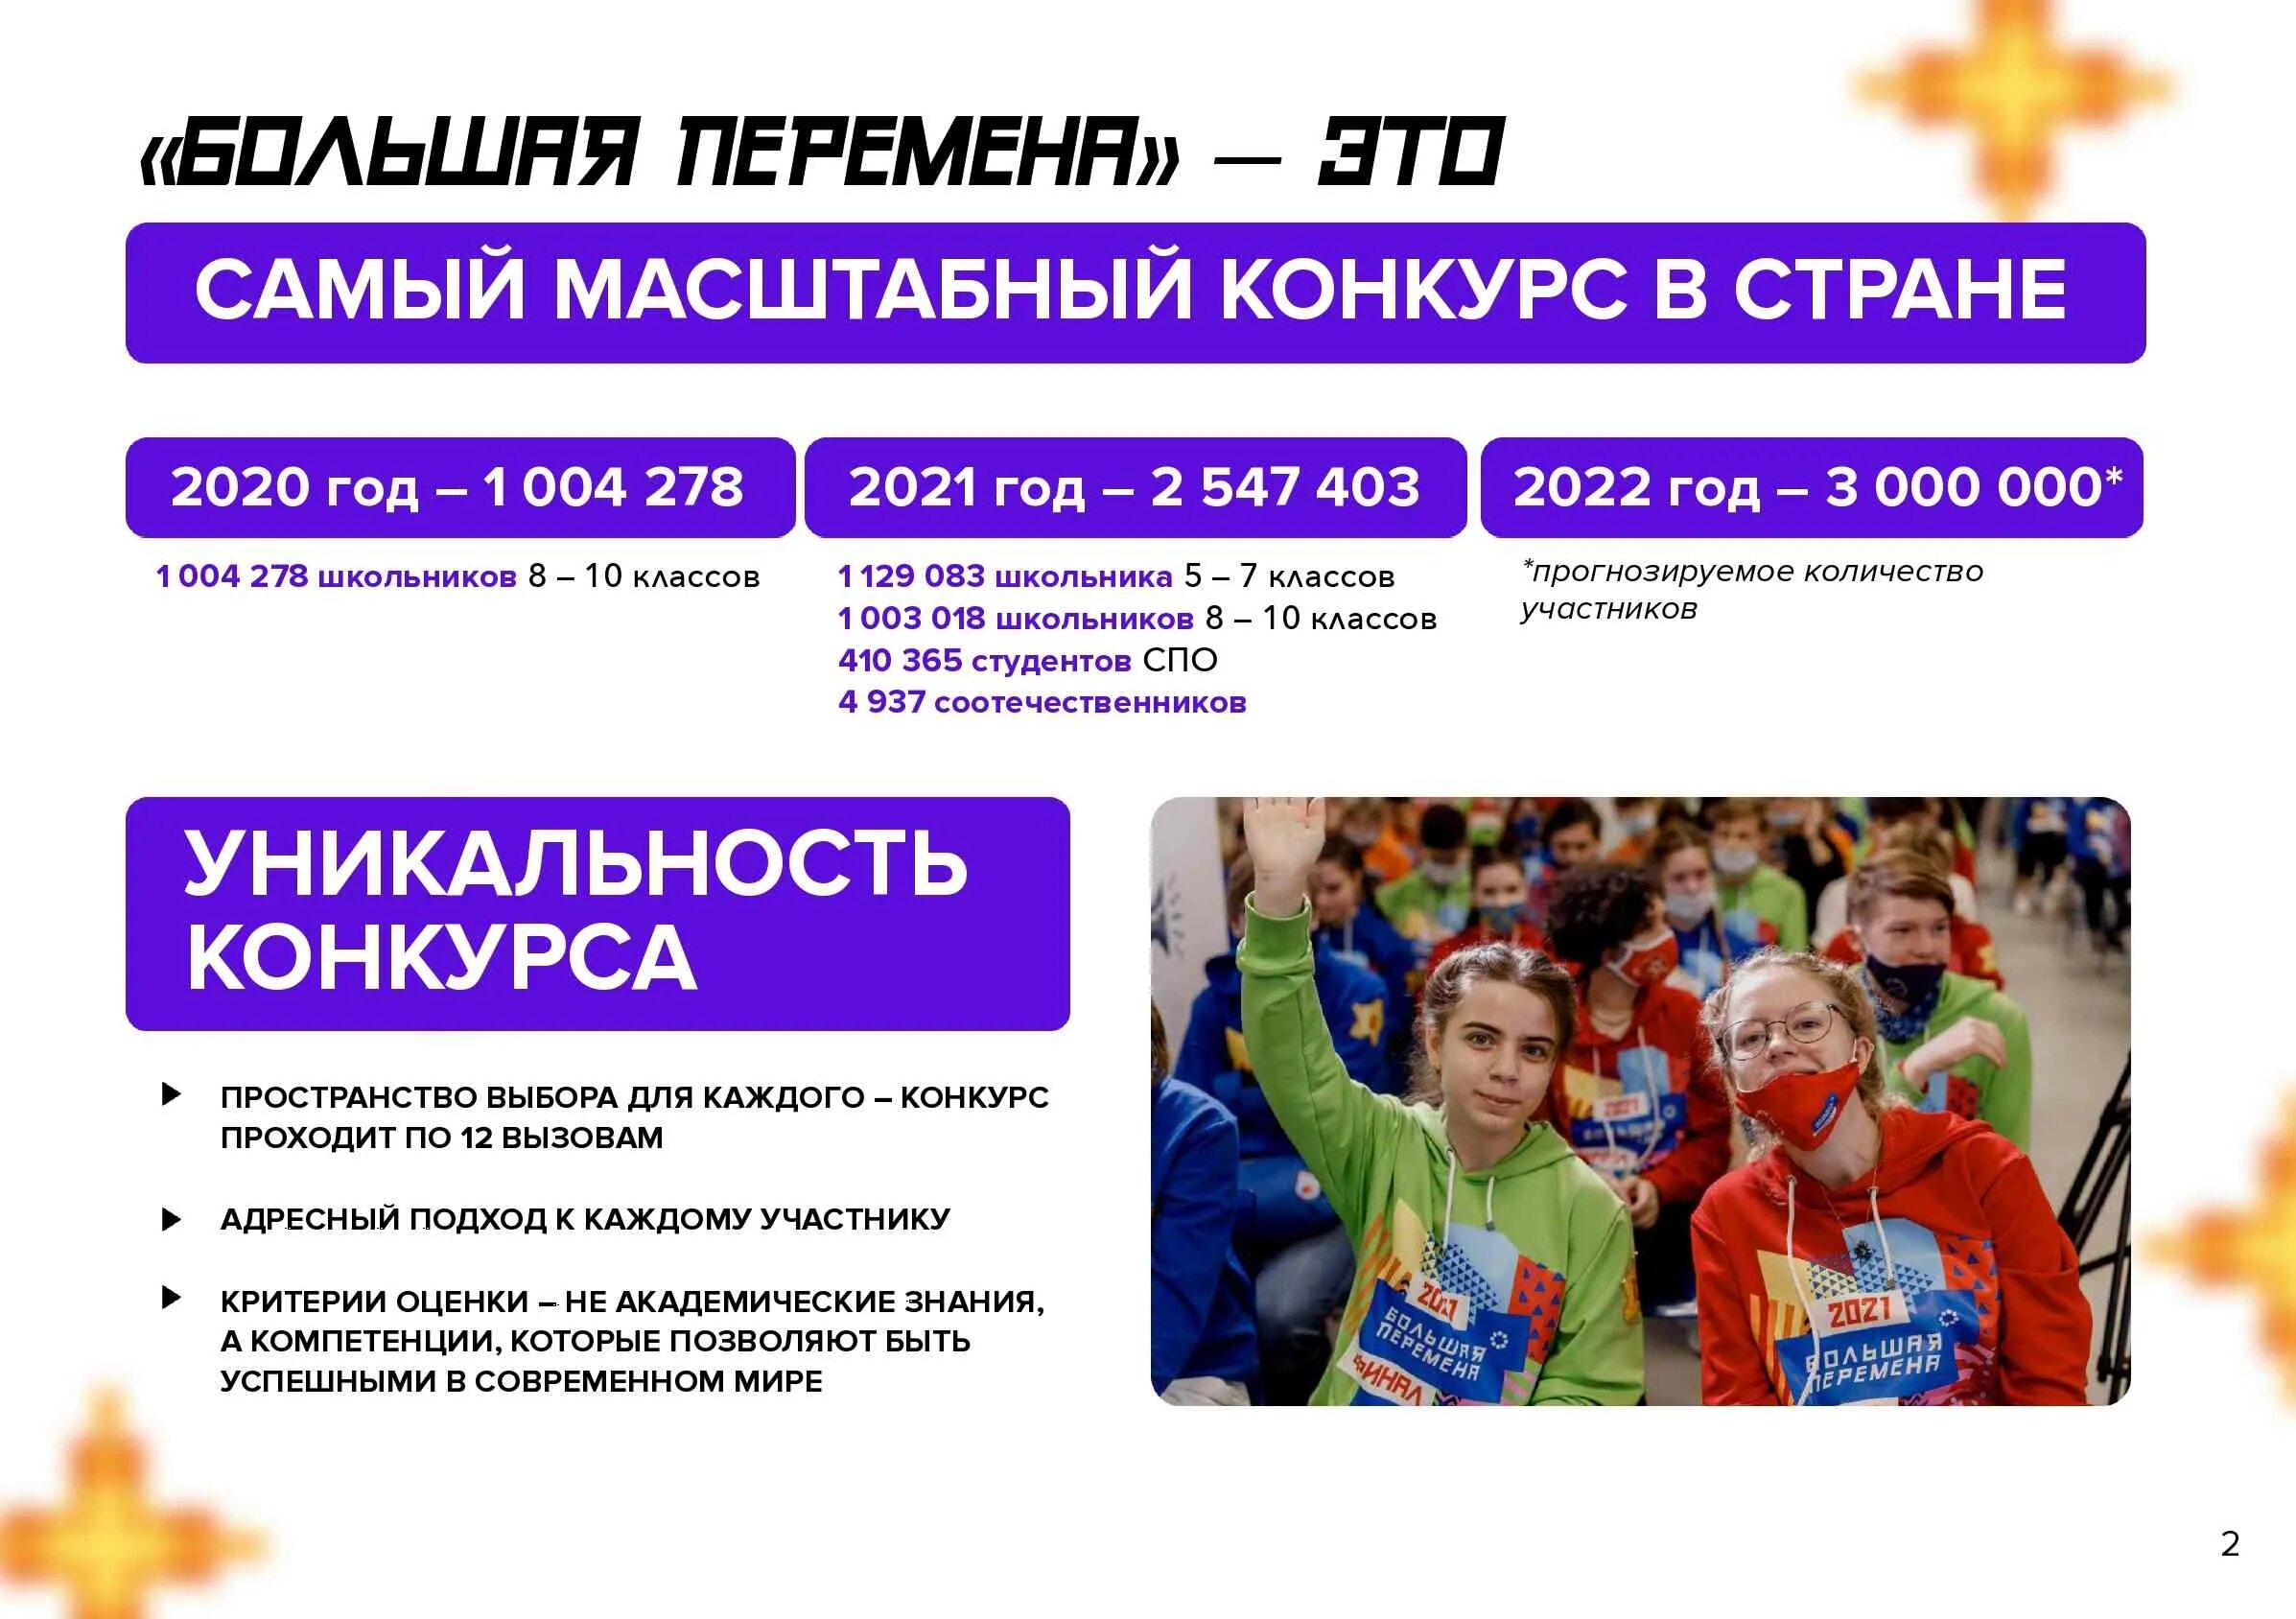 Большая перемена сайт для учеников. Всероссийский конкурс большая перемена 2022. Большая перемена конкурс для школьников 2022. Проект большая перемена 2022. Проект большая перемена для школьников что это такое.